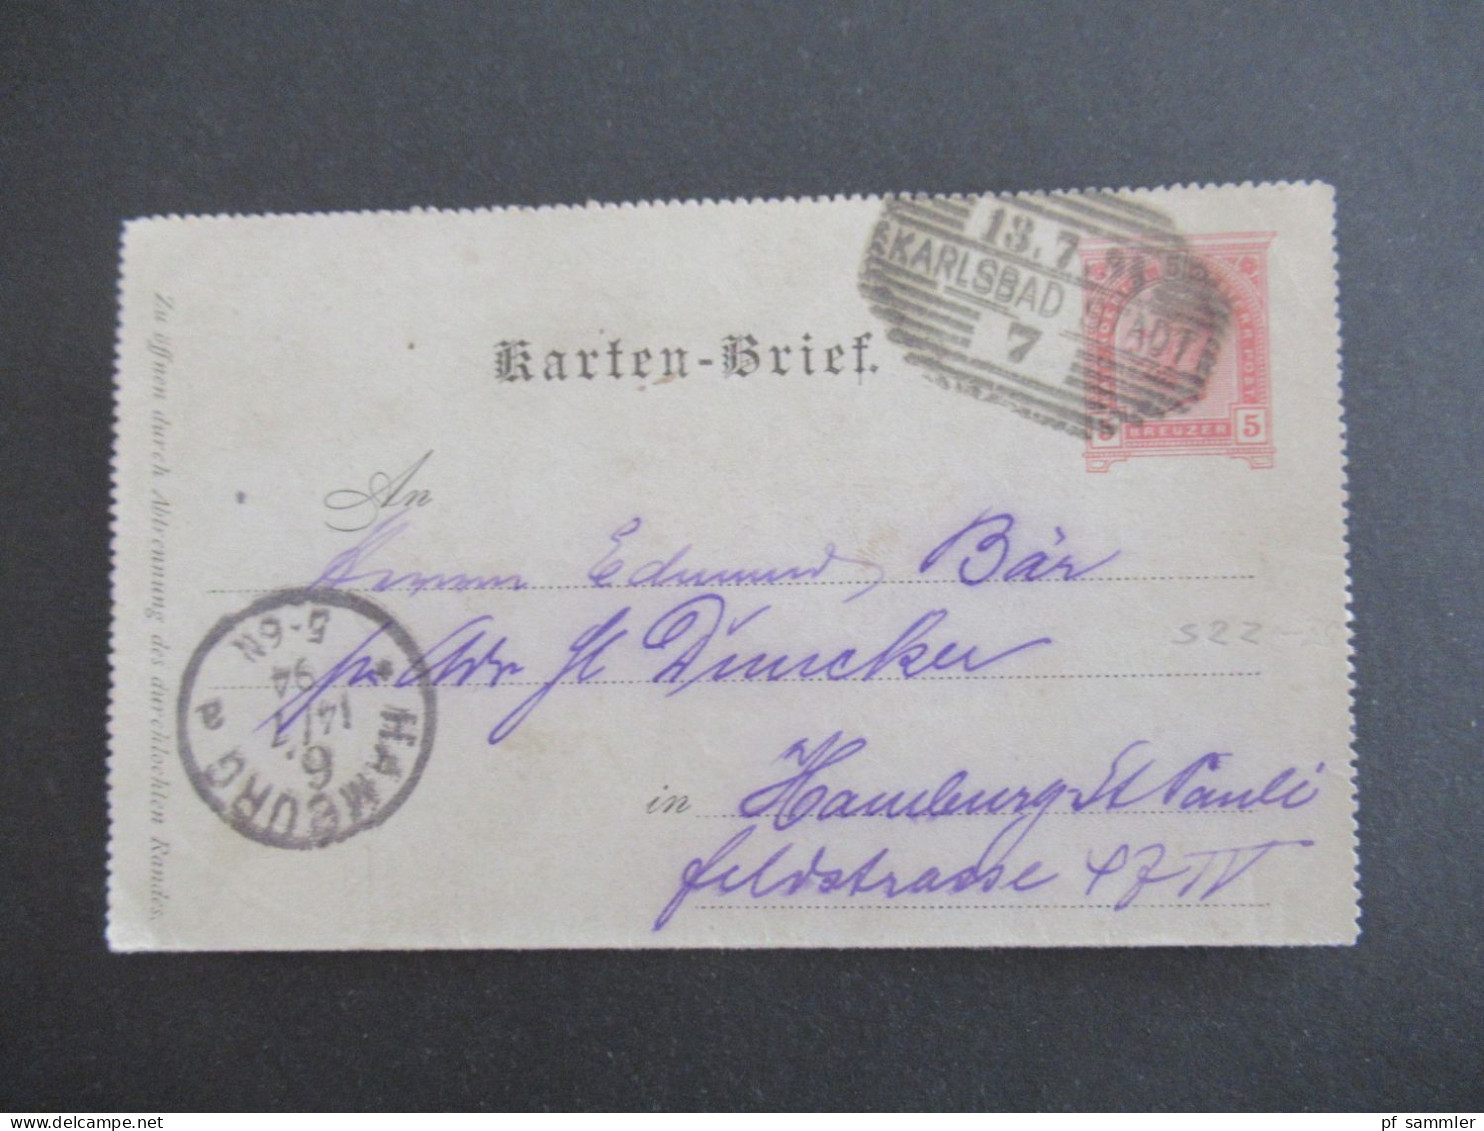 1914 Österreich / Tschechien Kartenbrief 5 Kreuzer Strichstempel Karlsbad Stadt 7 Nach Hamburg Gesendet Mit Ank. Stempel - Cartes-lettres